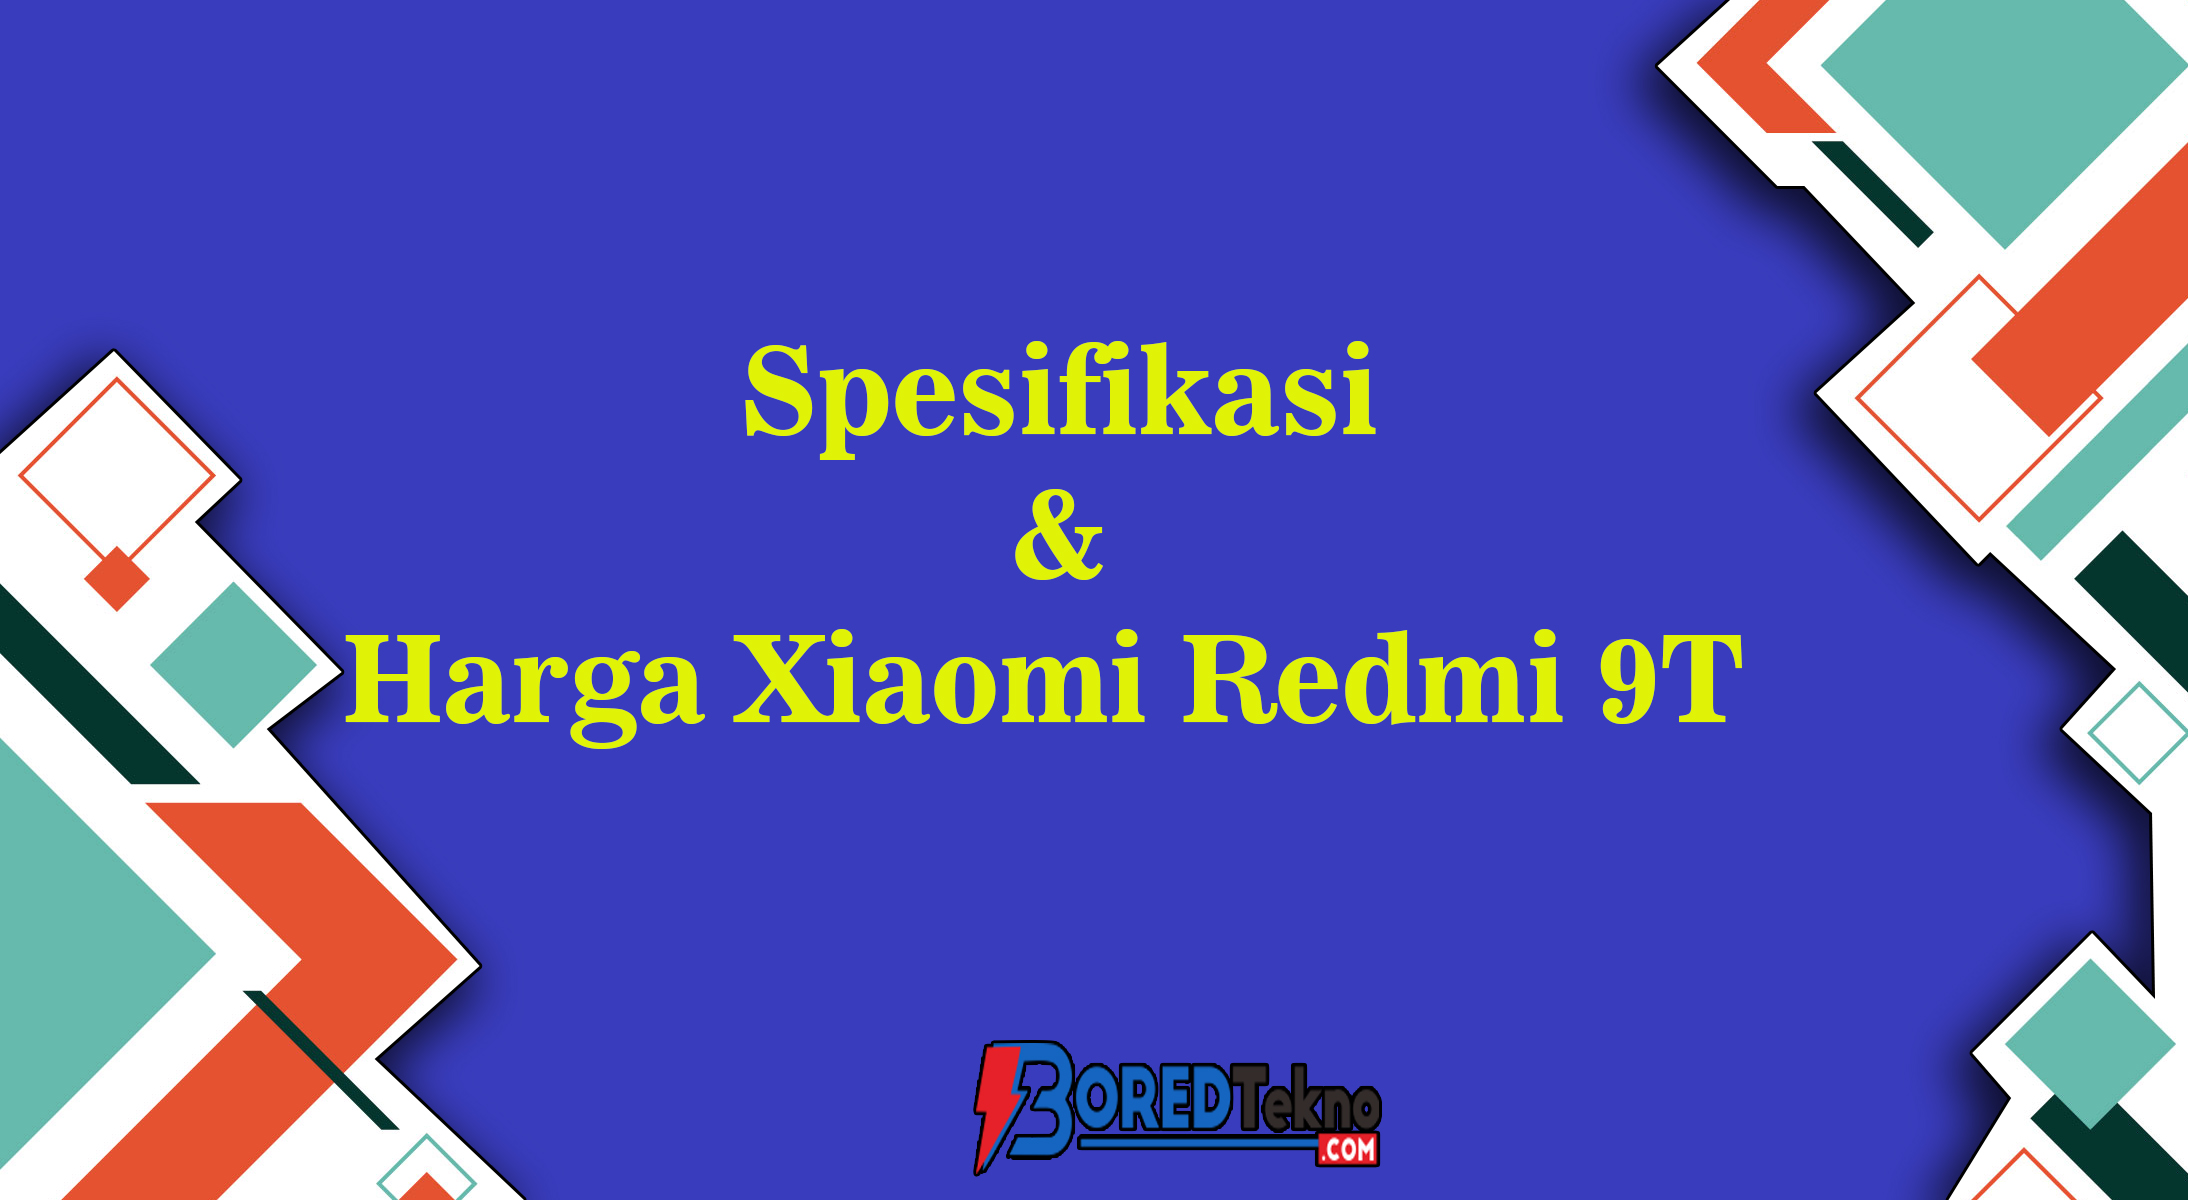 Spesifikasi & Harga Xiaomi Redmi 9T